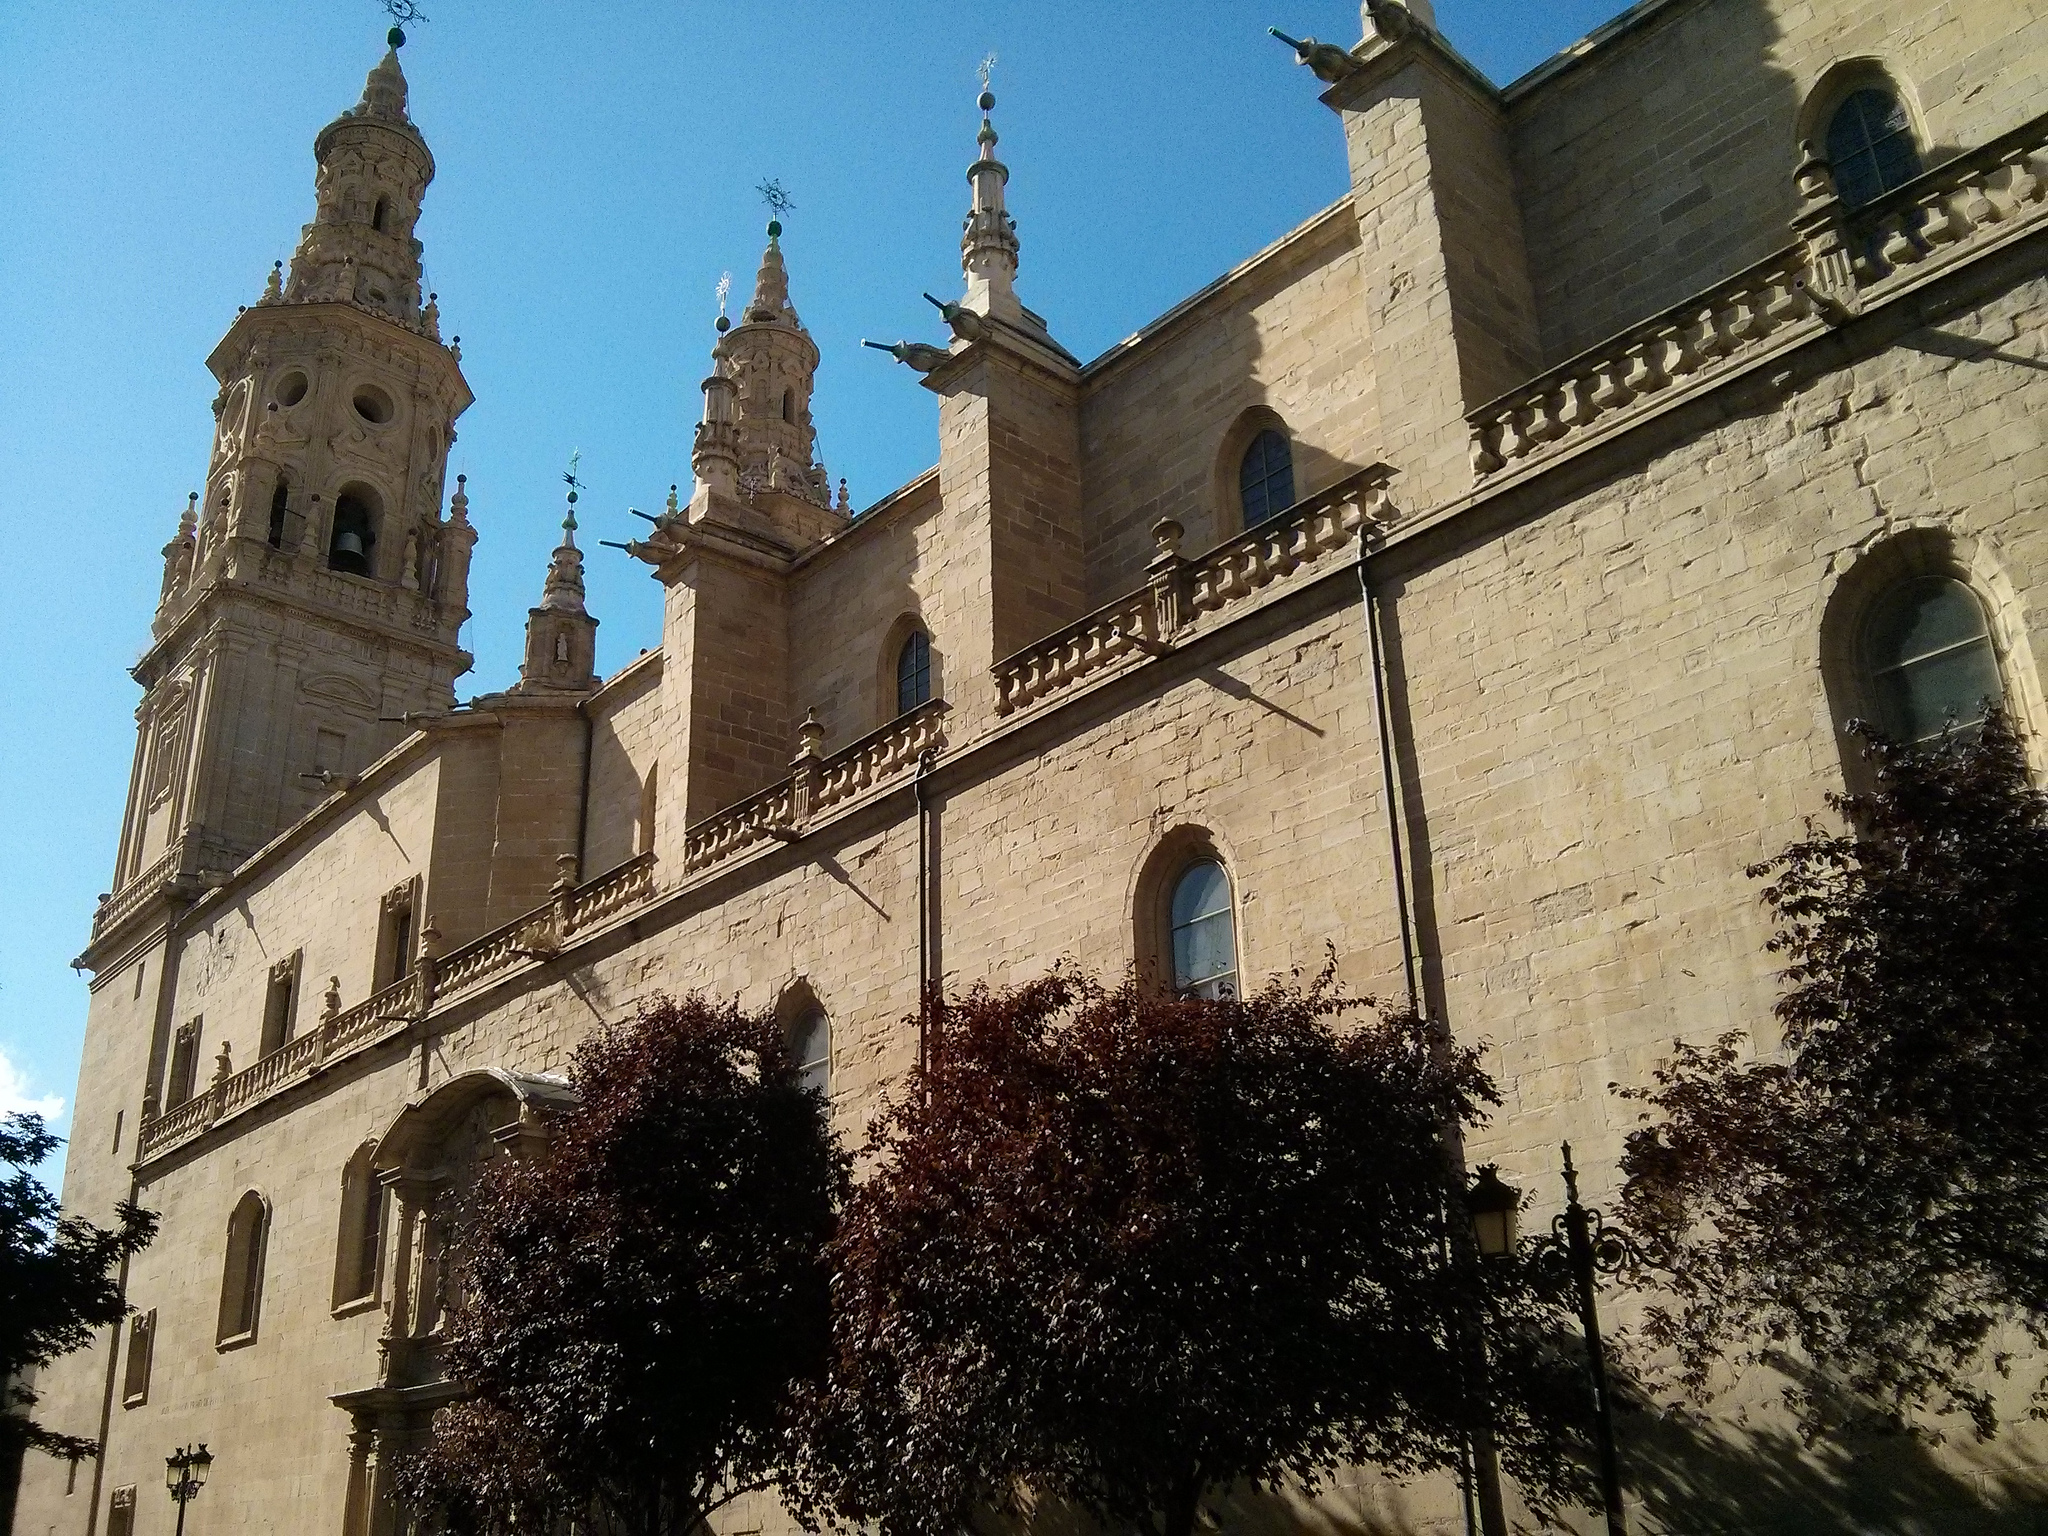 South facade of the Cathedral of Santa María la Redonda in Logroño